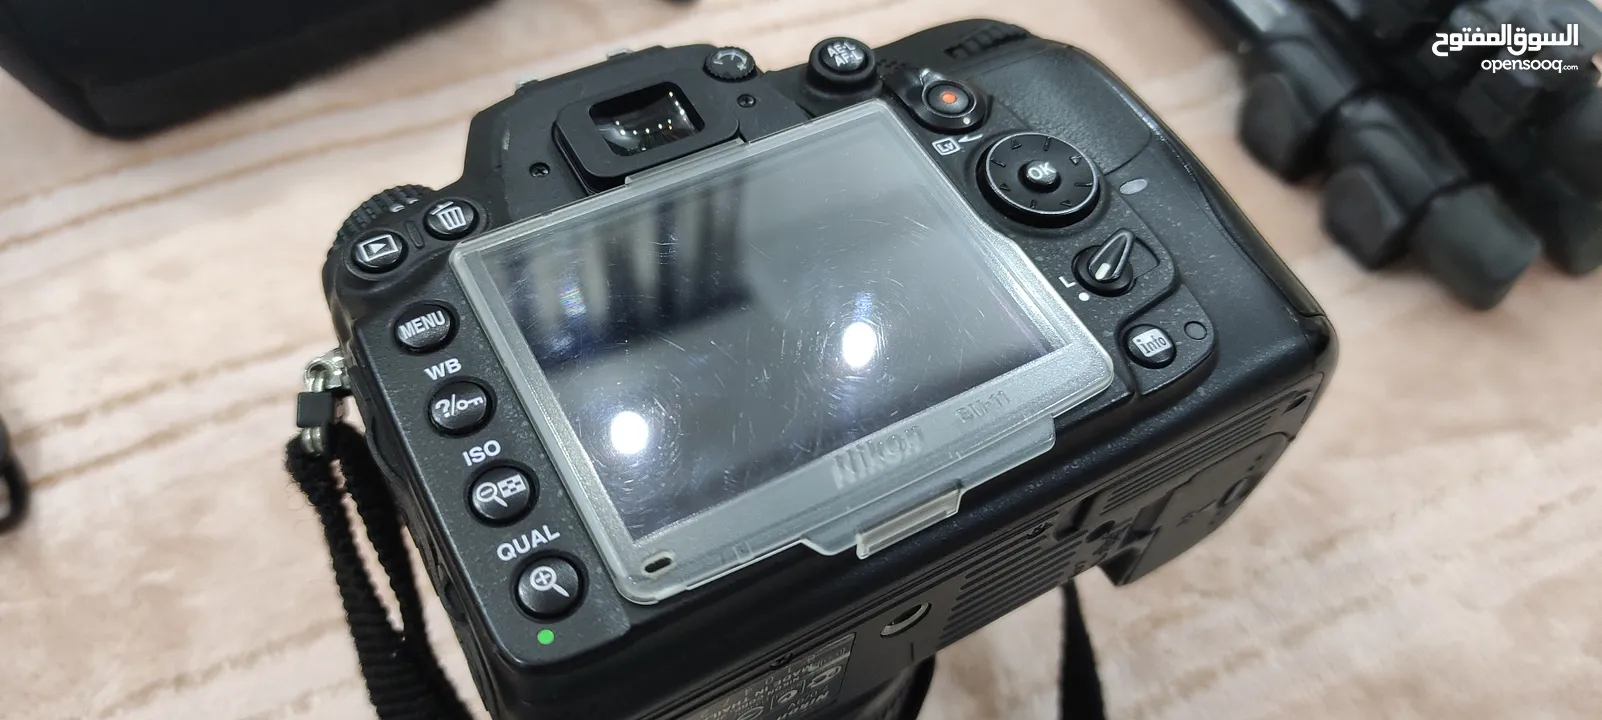 كاميرا نيكون شبه الجديد مع ملحقات كثيرة D7000 Nikon